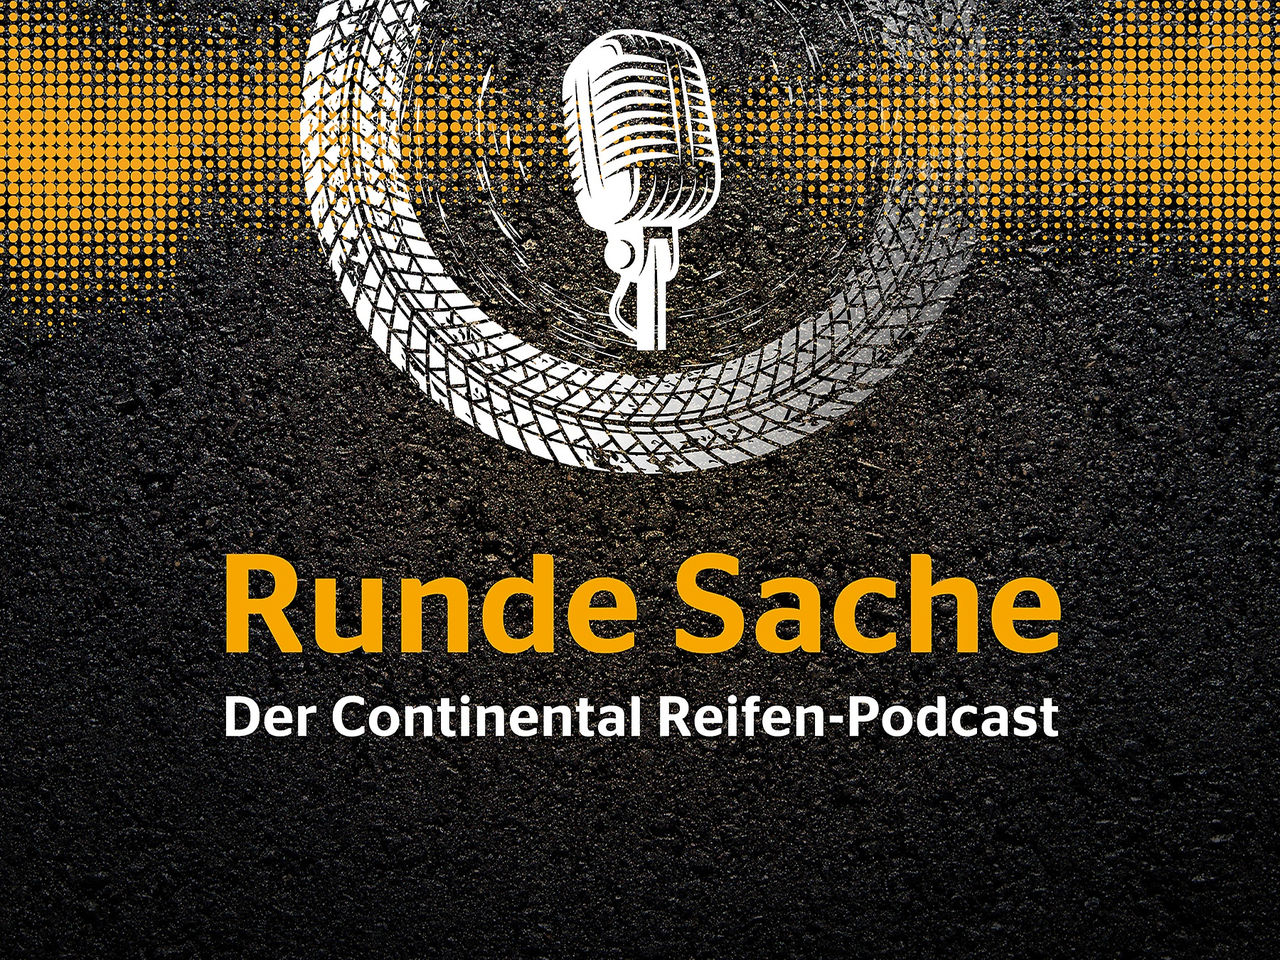 Podcast | Folge 1 | Reifenwissen für Camper & Co. | Continental Reifen